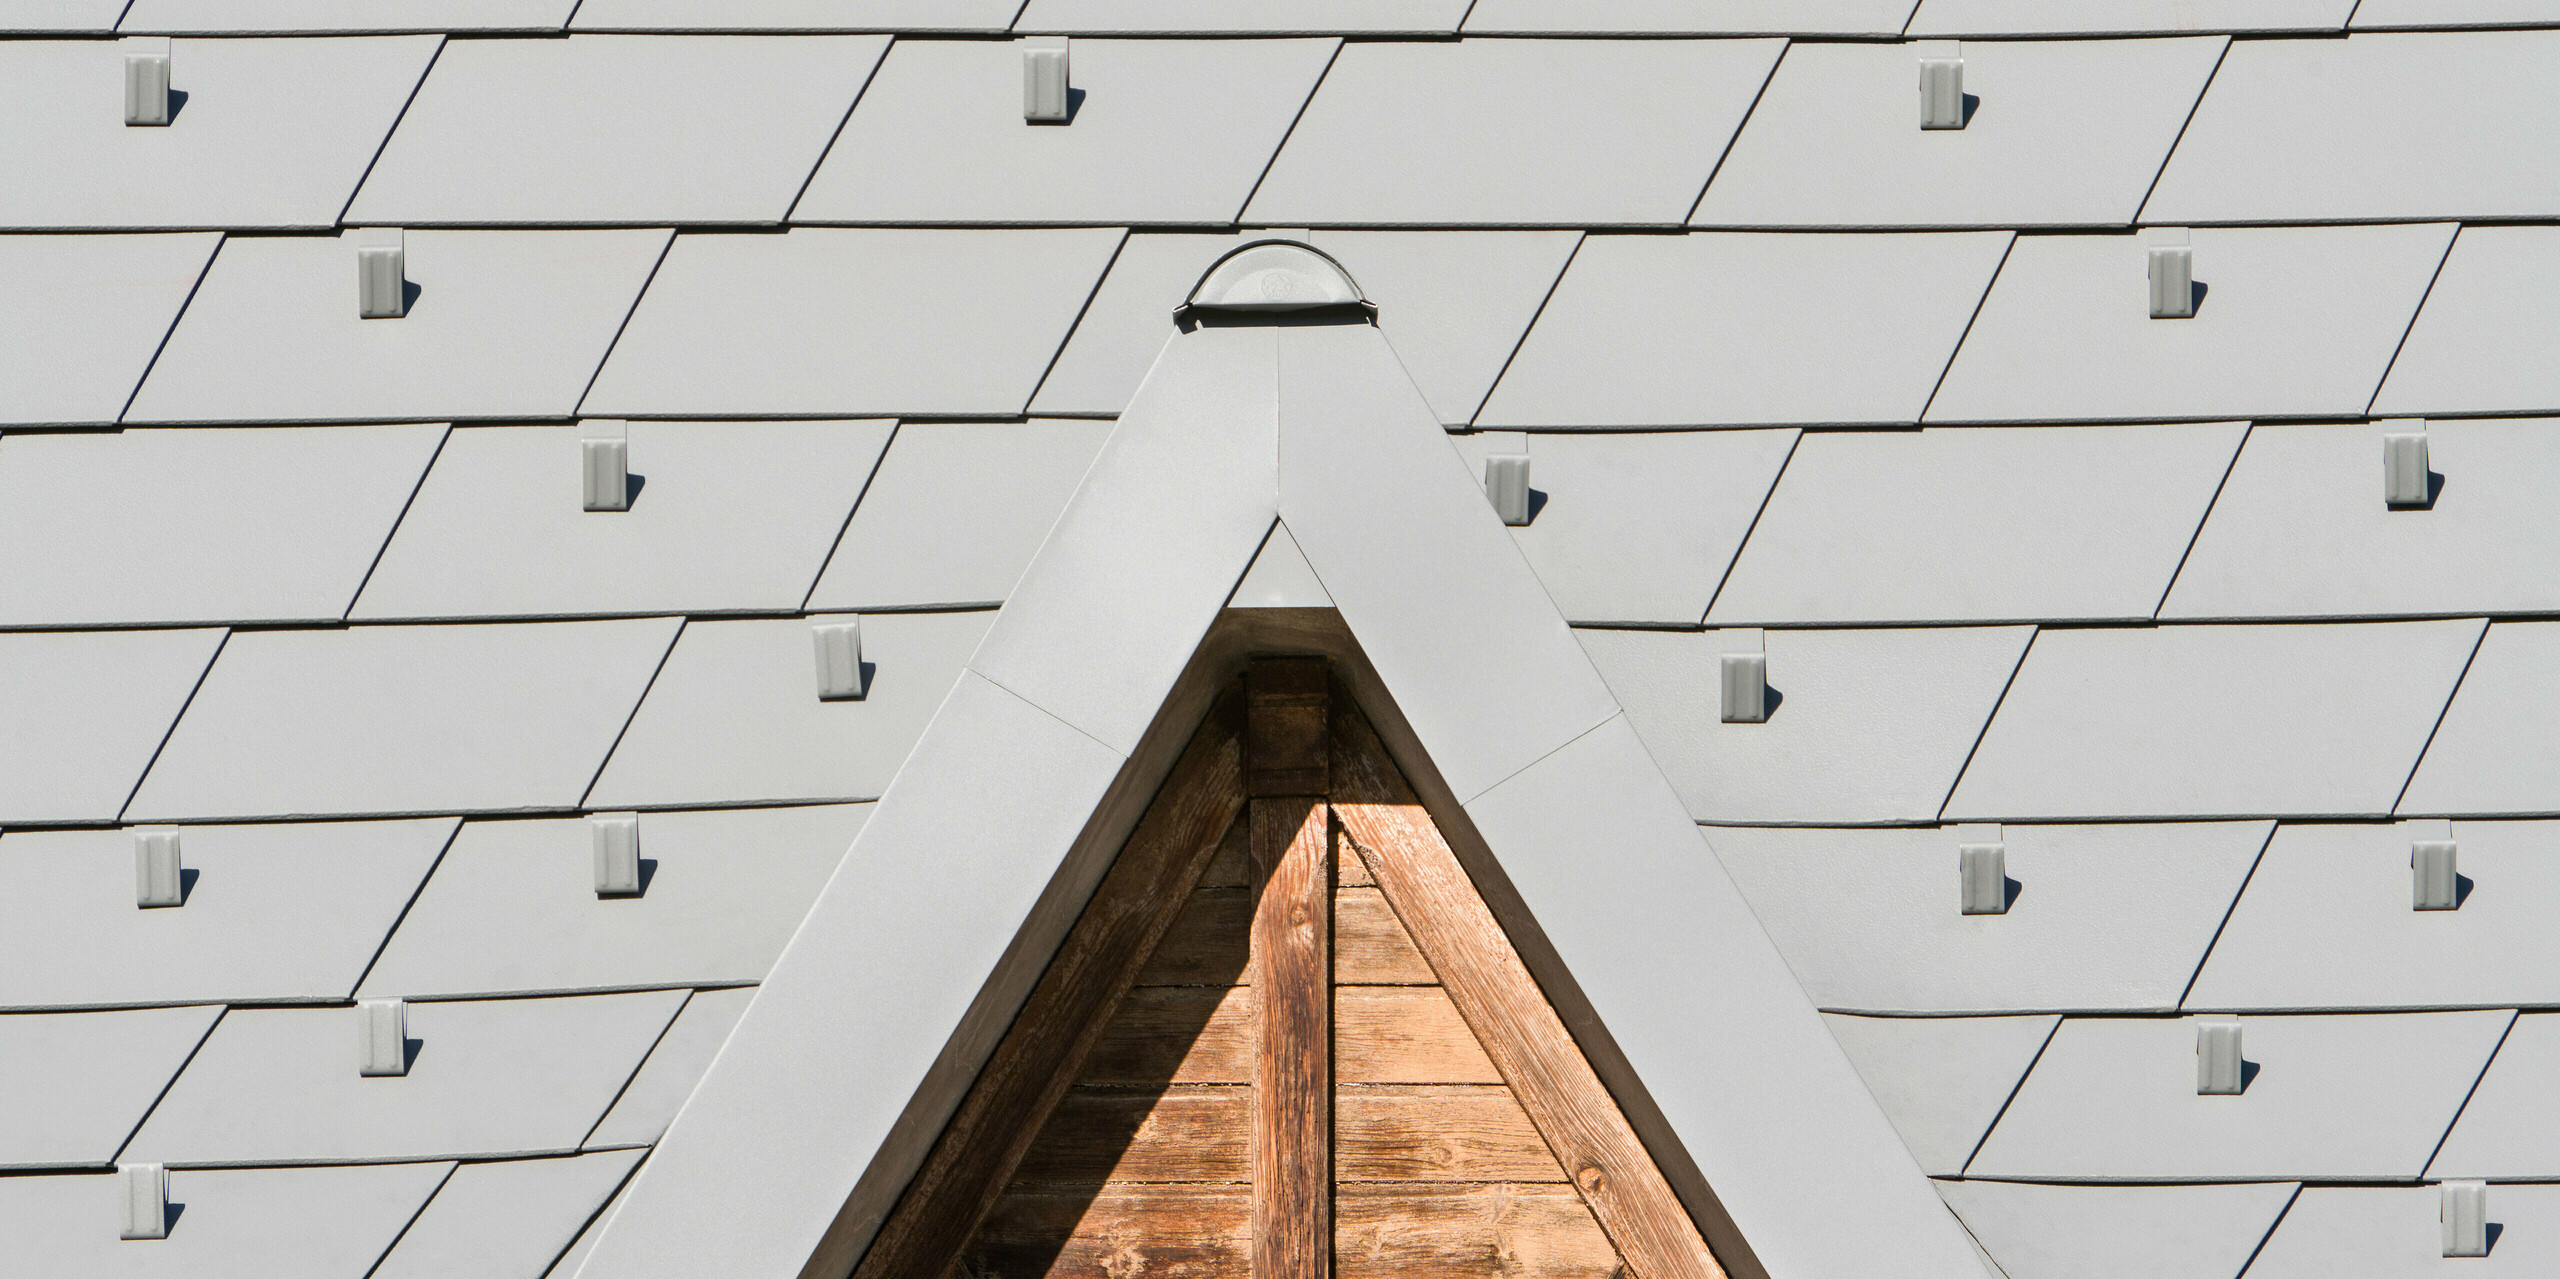 Vue détaillée des bardeaux de toiture PREFA en P.10 gris souris dans un projet de rénovation complexe à Barcelonnette, France.